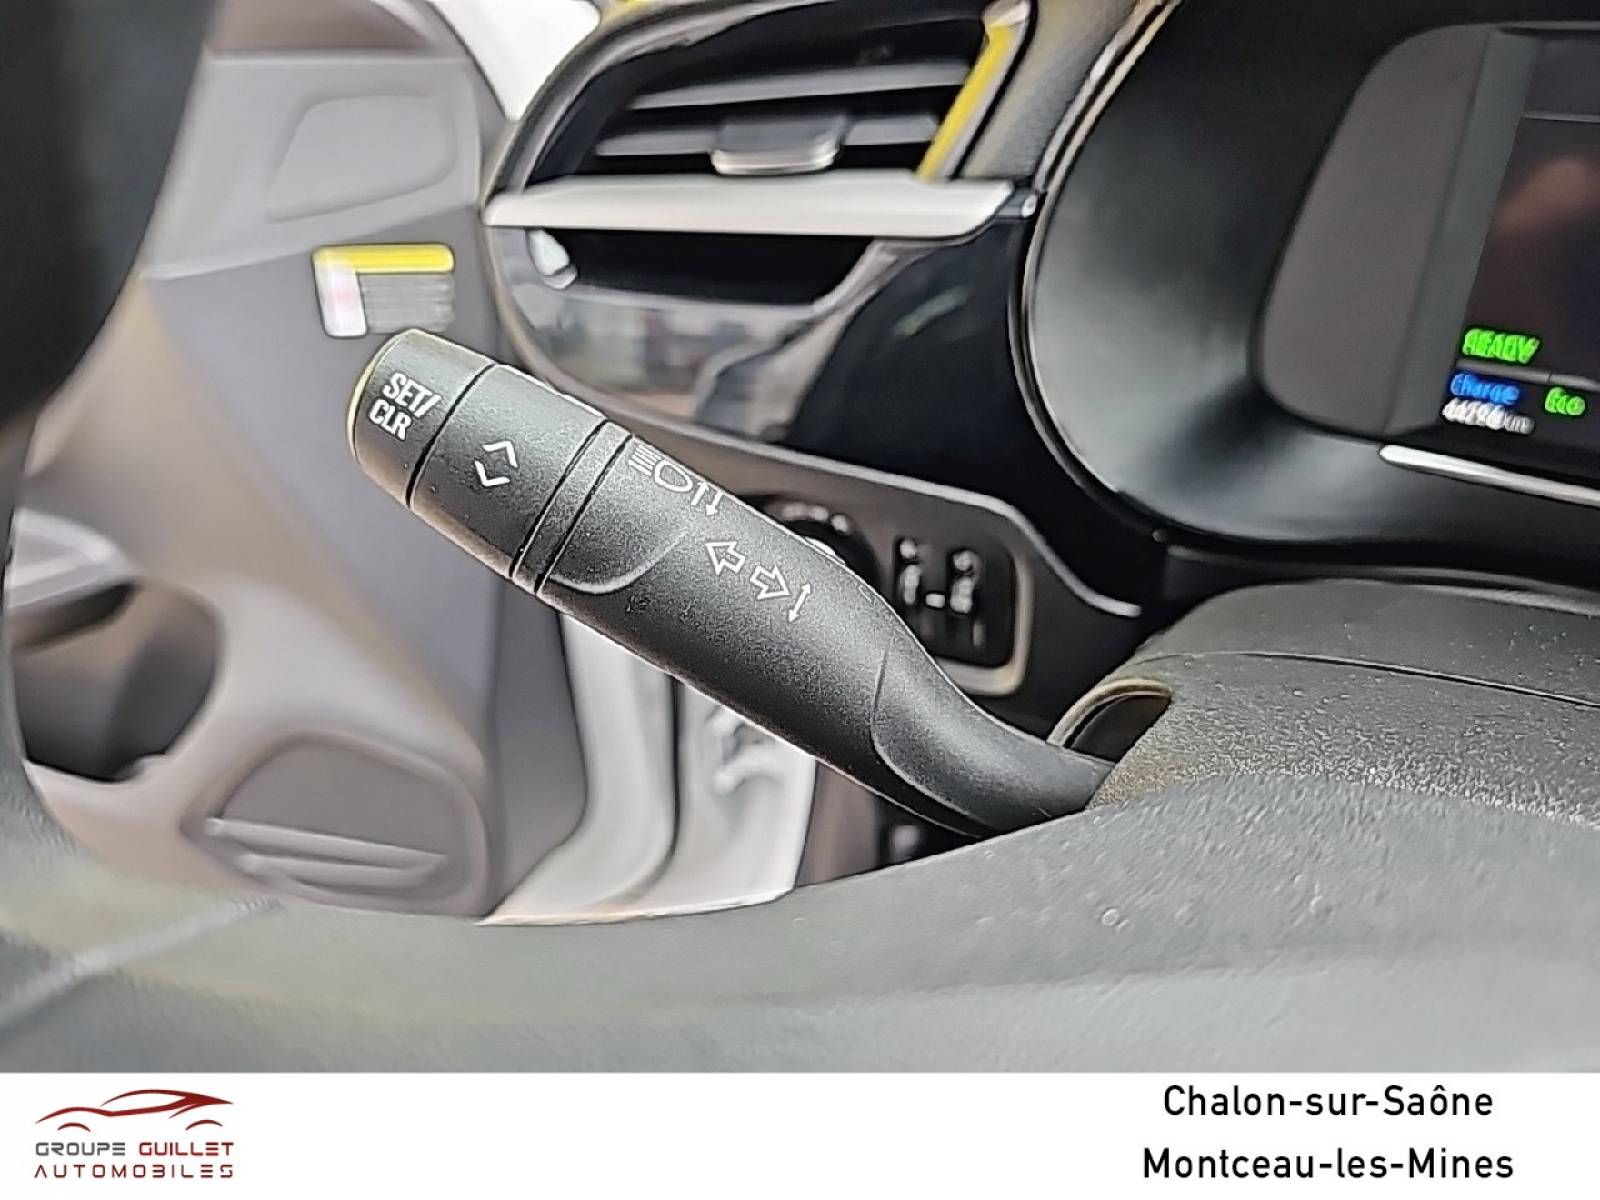 OPEL Corsa Electrique 136 ch & Batterie 50 kWh - véhicule d'occasion - Groupe Guillet - Opel Magicauto Chalon - 71380 - Saint-Marcel - 24